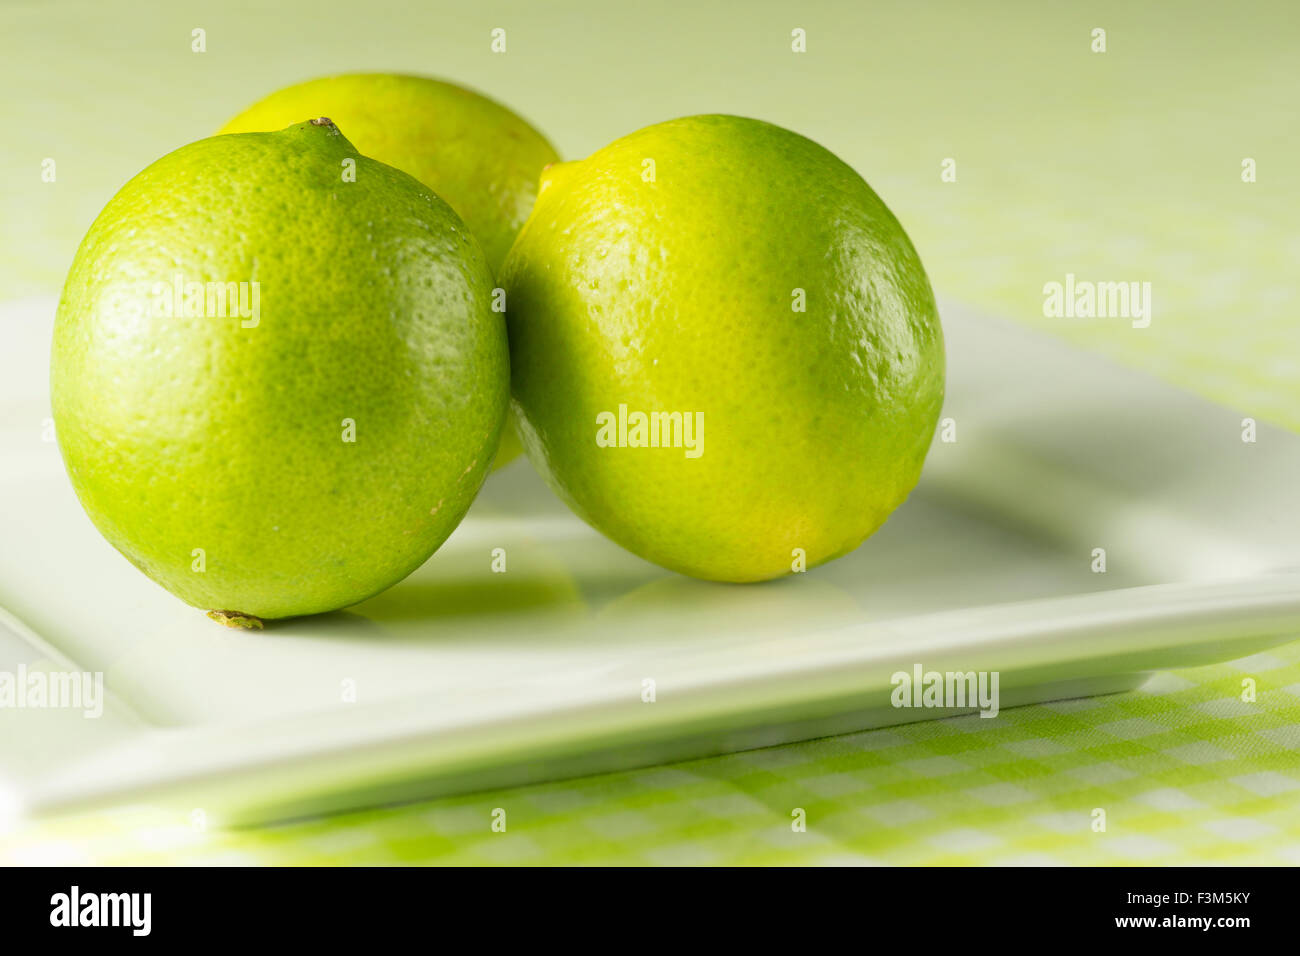 Frischen grünen Limetten auf einem weißen Teller gegen einen sommerlich grünen Hintergrund und karierten Tischdecke Stockfoto